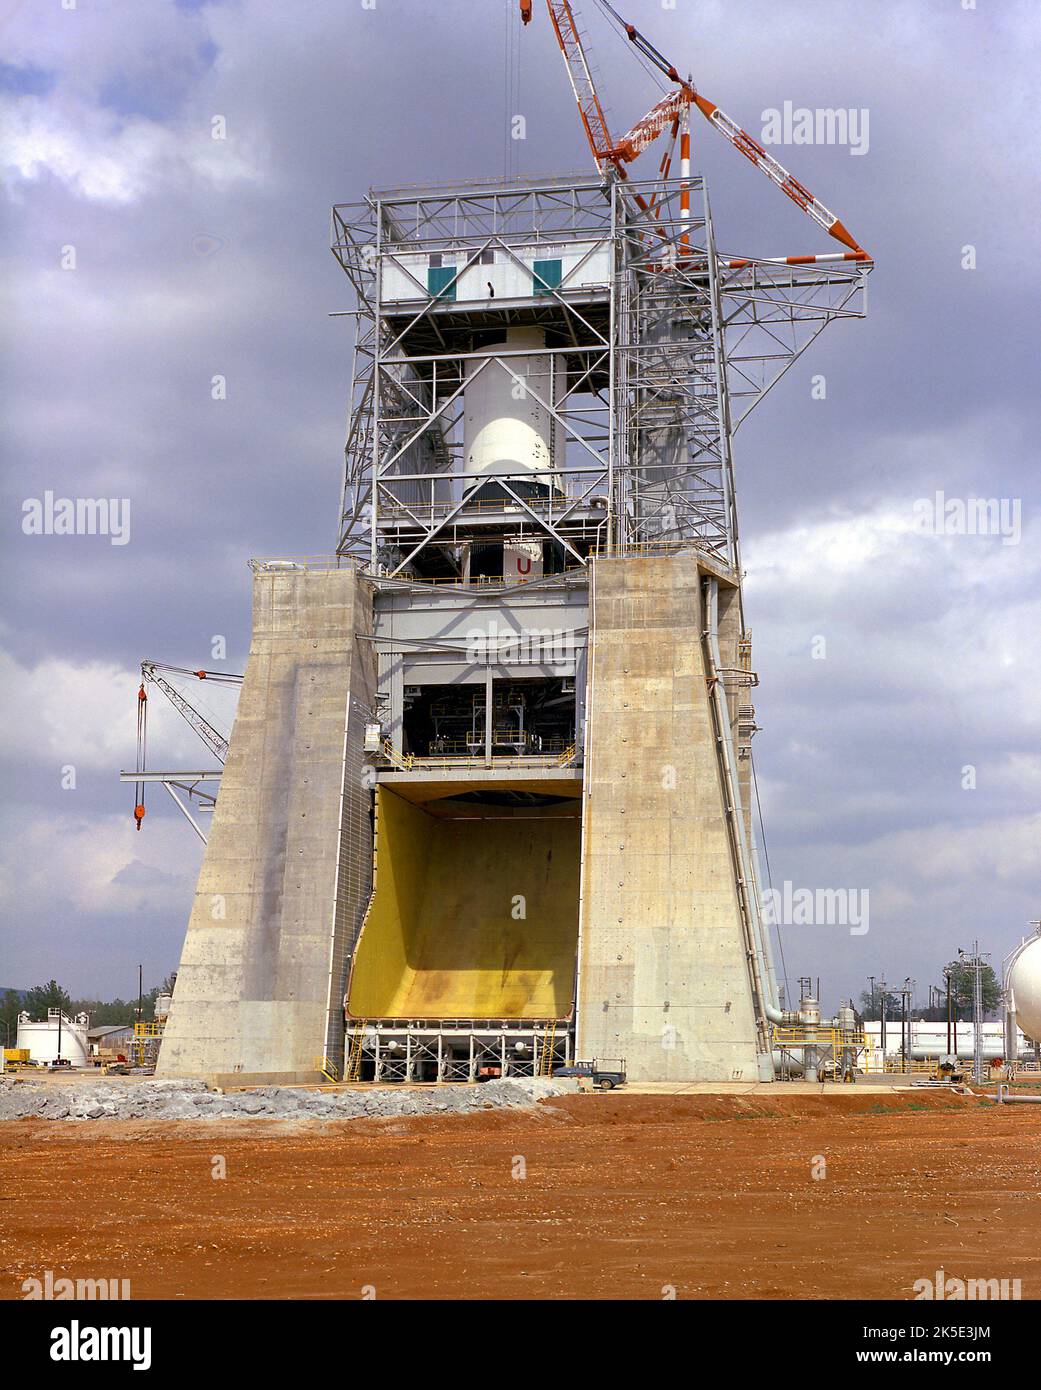 Il Marshall Space Flight Center della NASA ha superato la fase statica S-IC-2, la prima fase del secondo veicolo di volo Saturno V. Il palco era alimentato da cinque motori F-1, ciascuno in grado di produrre 1,5 milioni di libbre di spinta. La S-IC-2 fu uno dei primi due modelli di volo dello stadio S-IC e fu utilizzata nella missione Apollo 6. Qui viene installato il S-IC-T, uno stadio di prova di accensione statica, che attende la prima accensione di tutti e cinque i motori F-1 presso il banco di prova statico Marshall. Giugno 7, 1966 immagine della NASA / credito: NASA Foto Stock